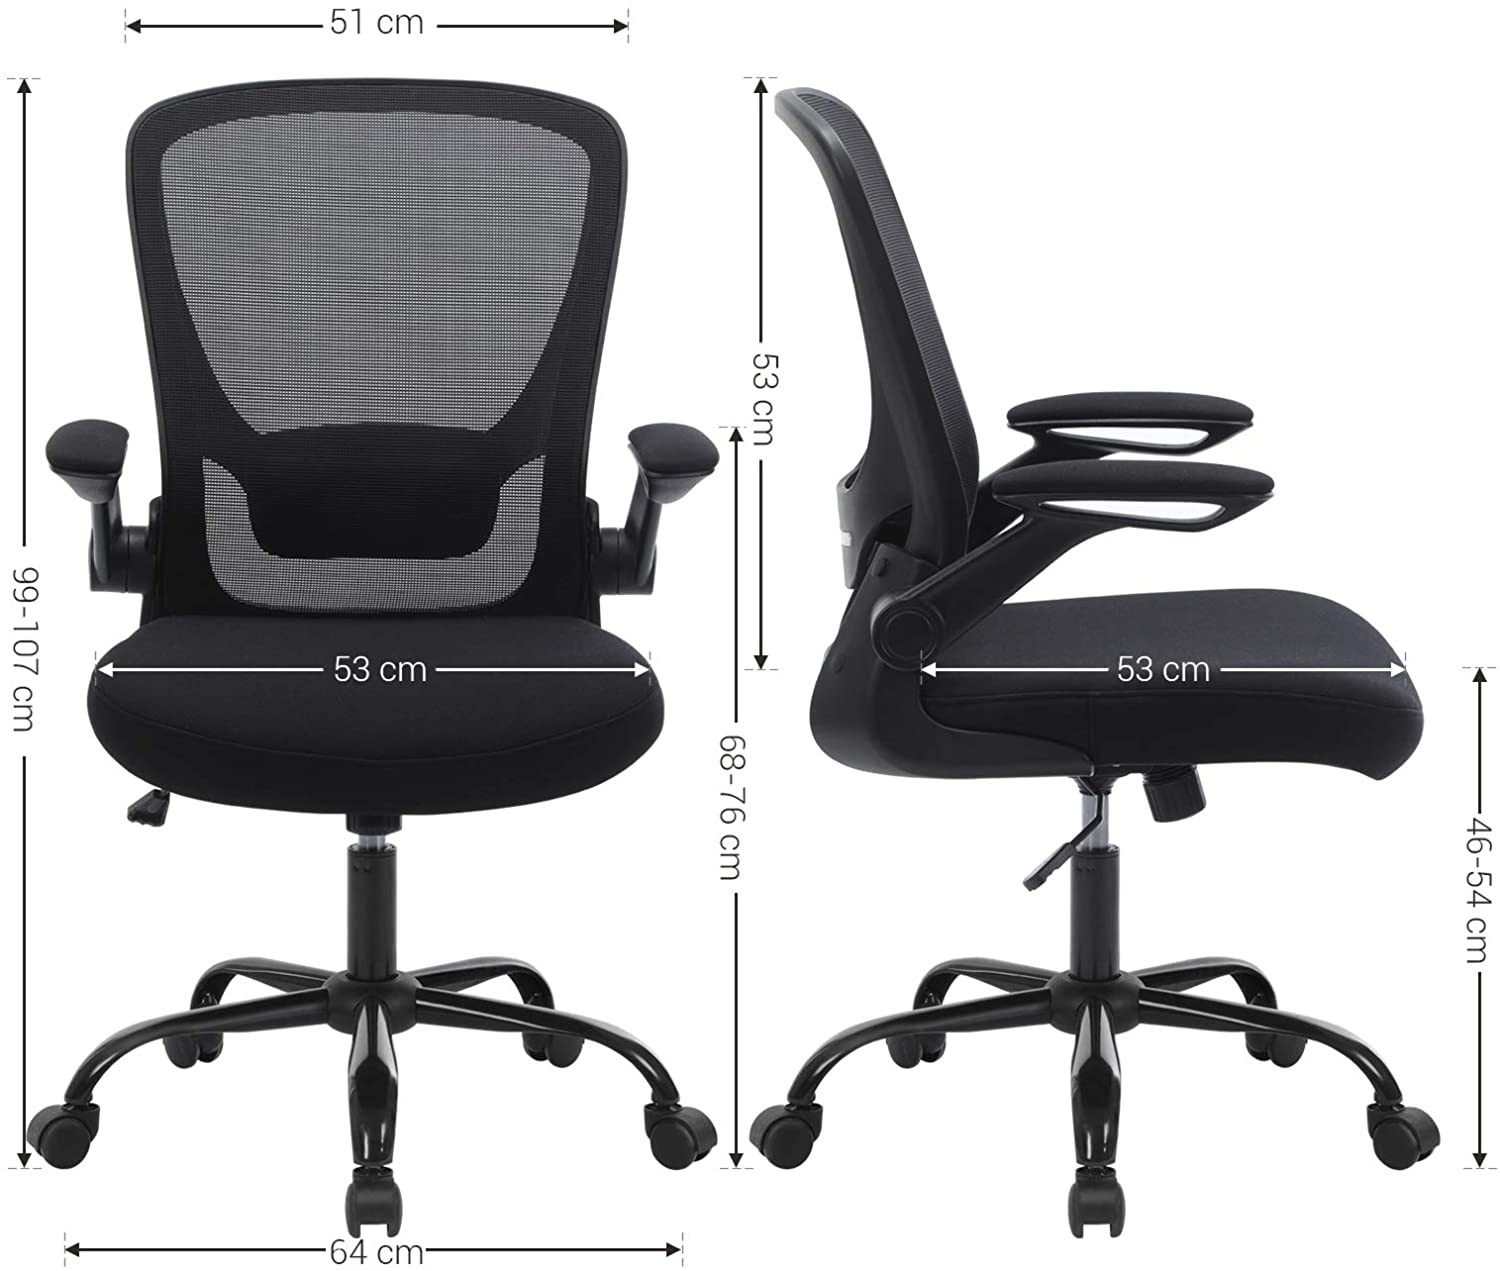 Kancelárska stolička OBN37BK